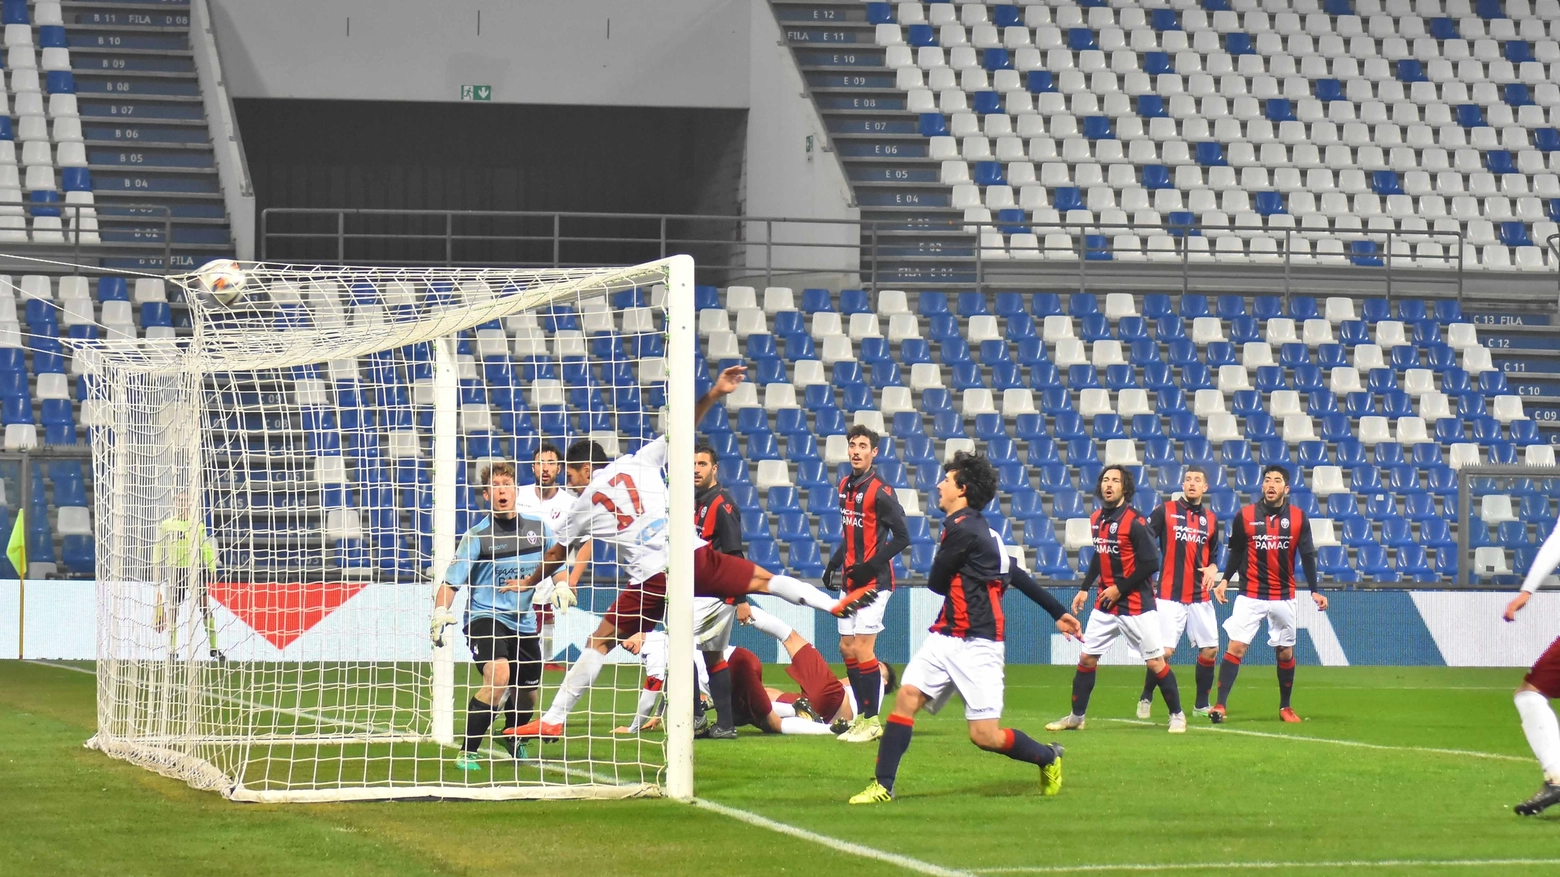 Antonio Broso sigla il terzo gol granata (foto Artioli)